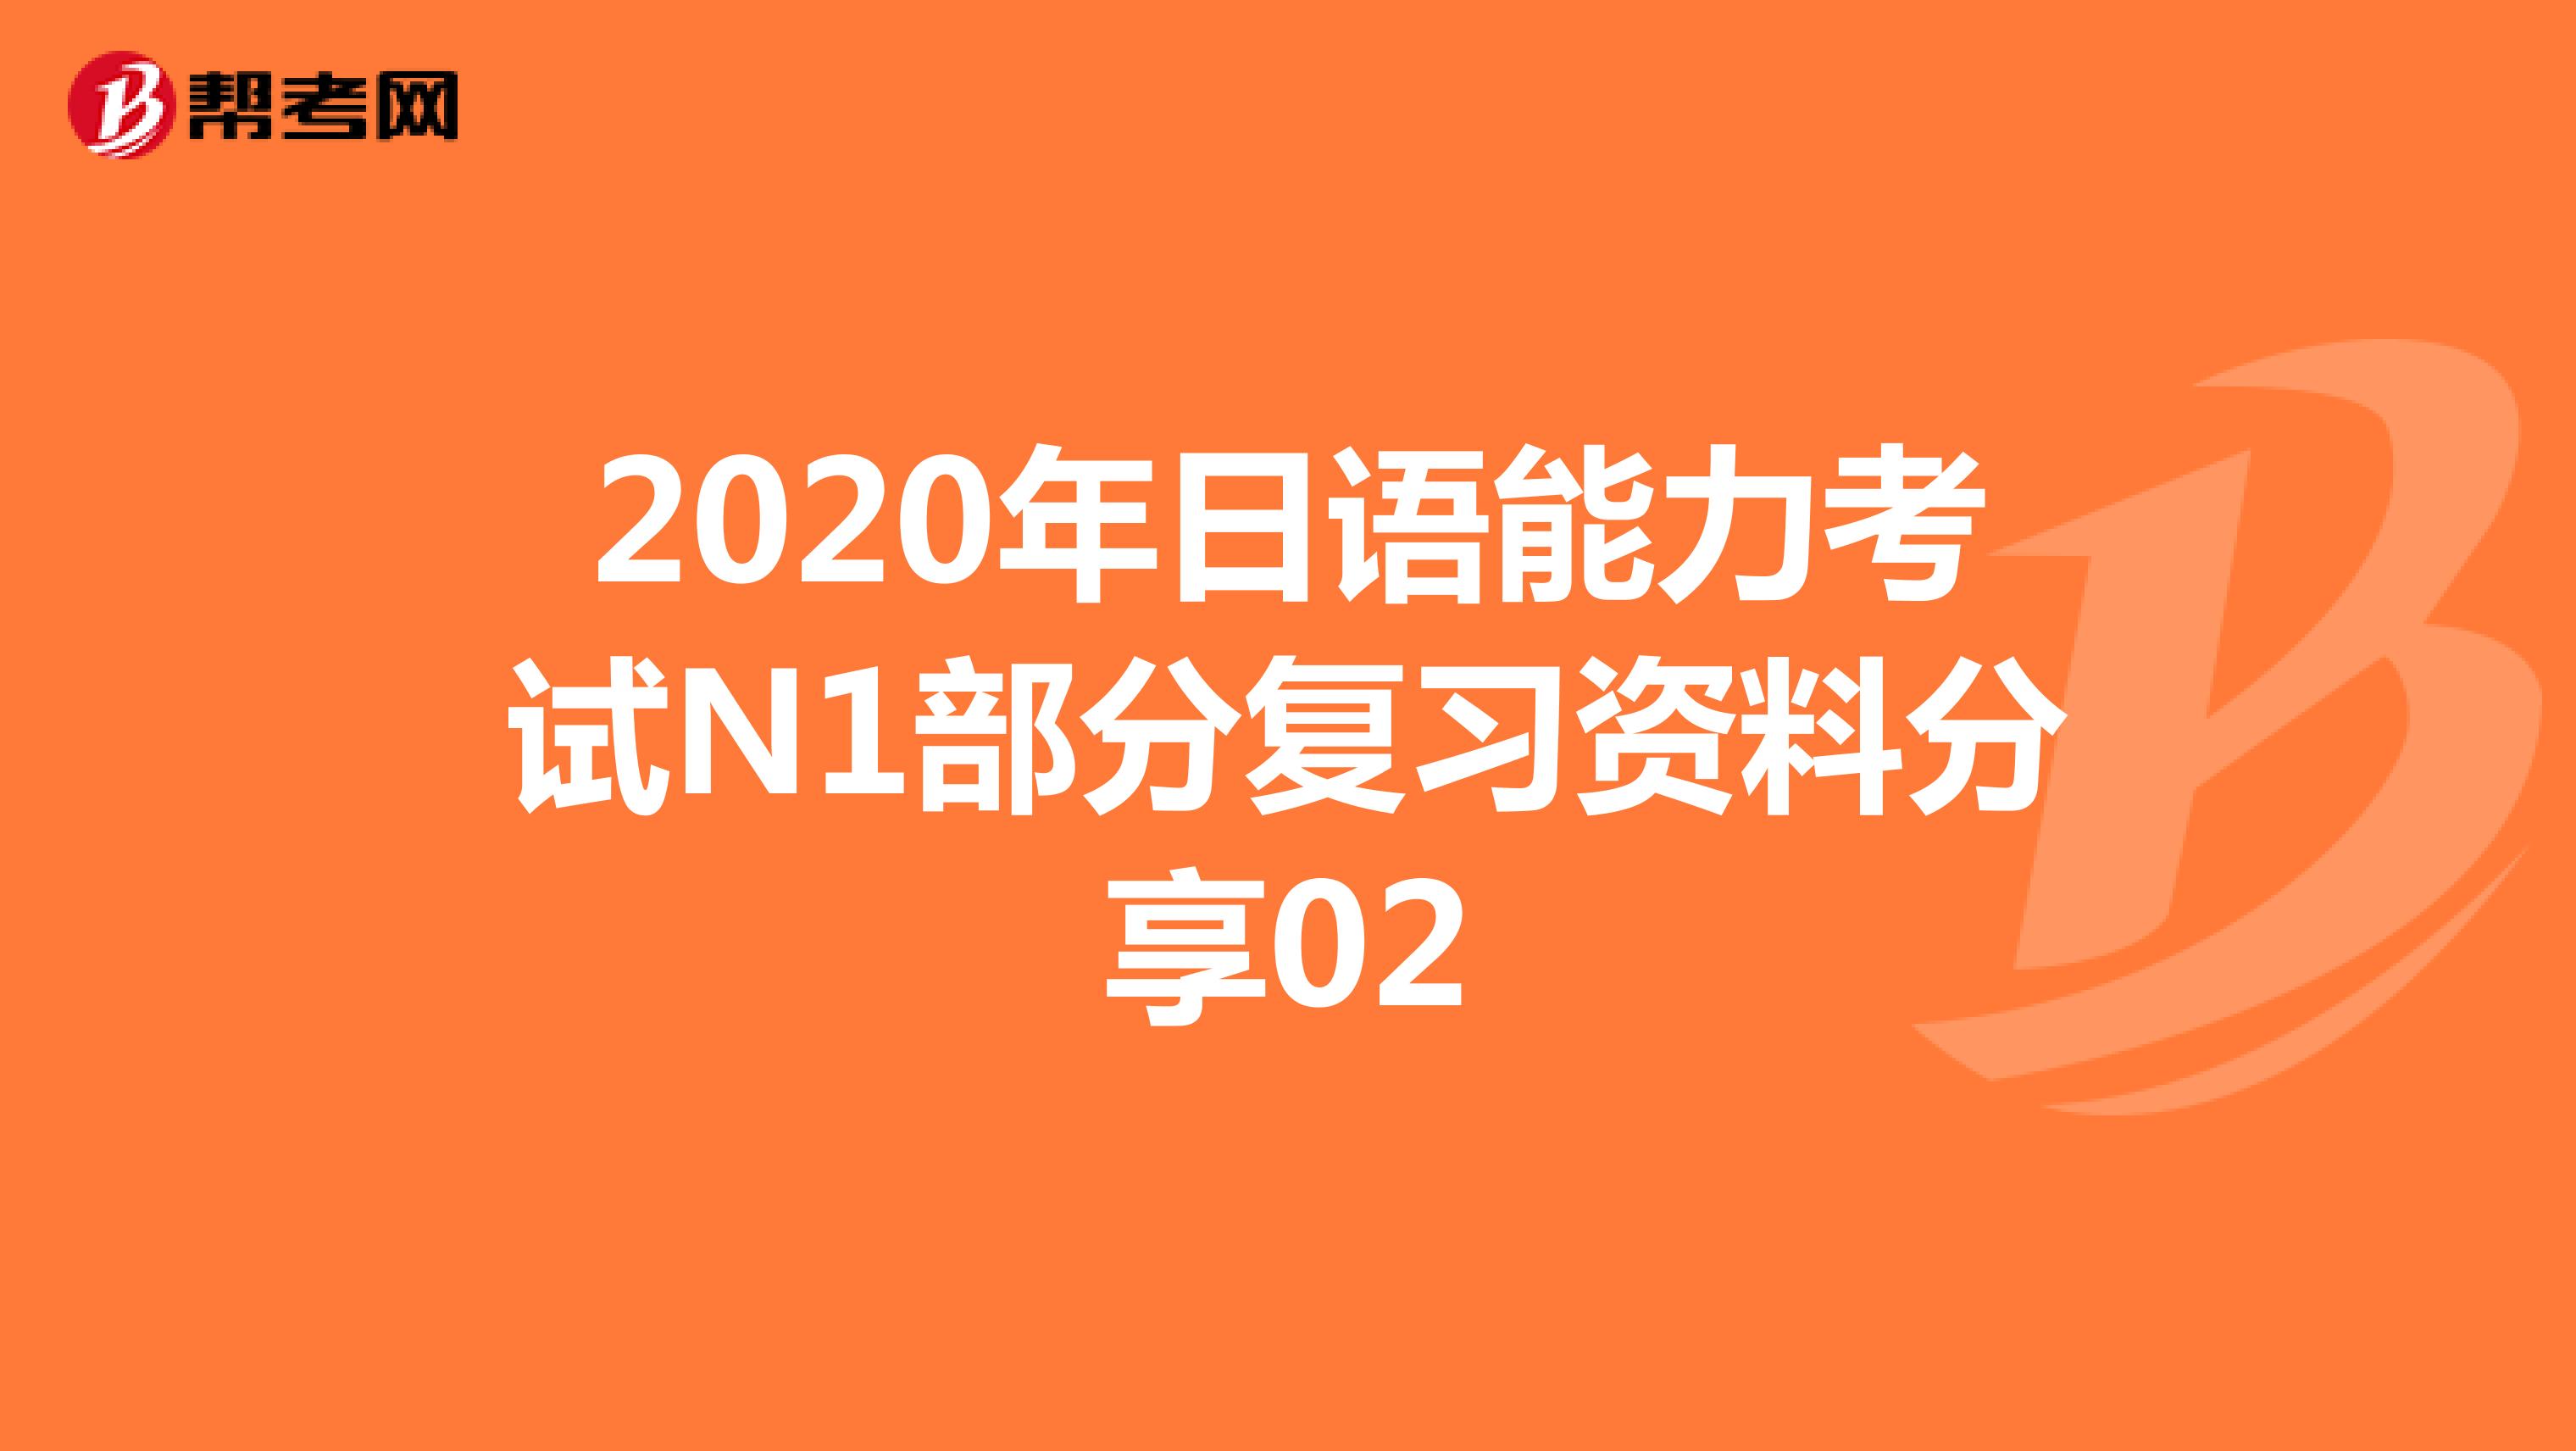 2020年日语能力考试N1部分复习资料分享02